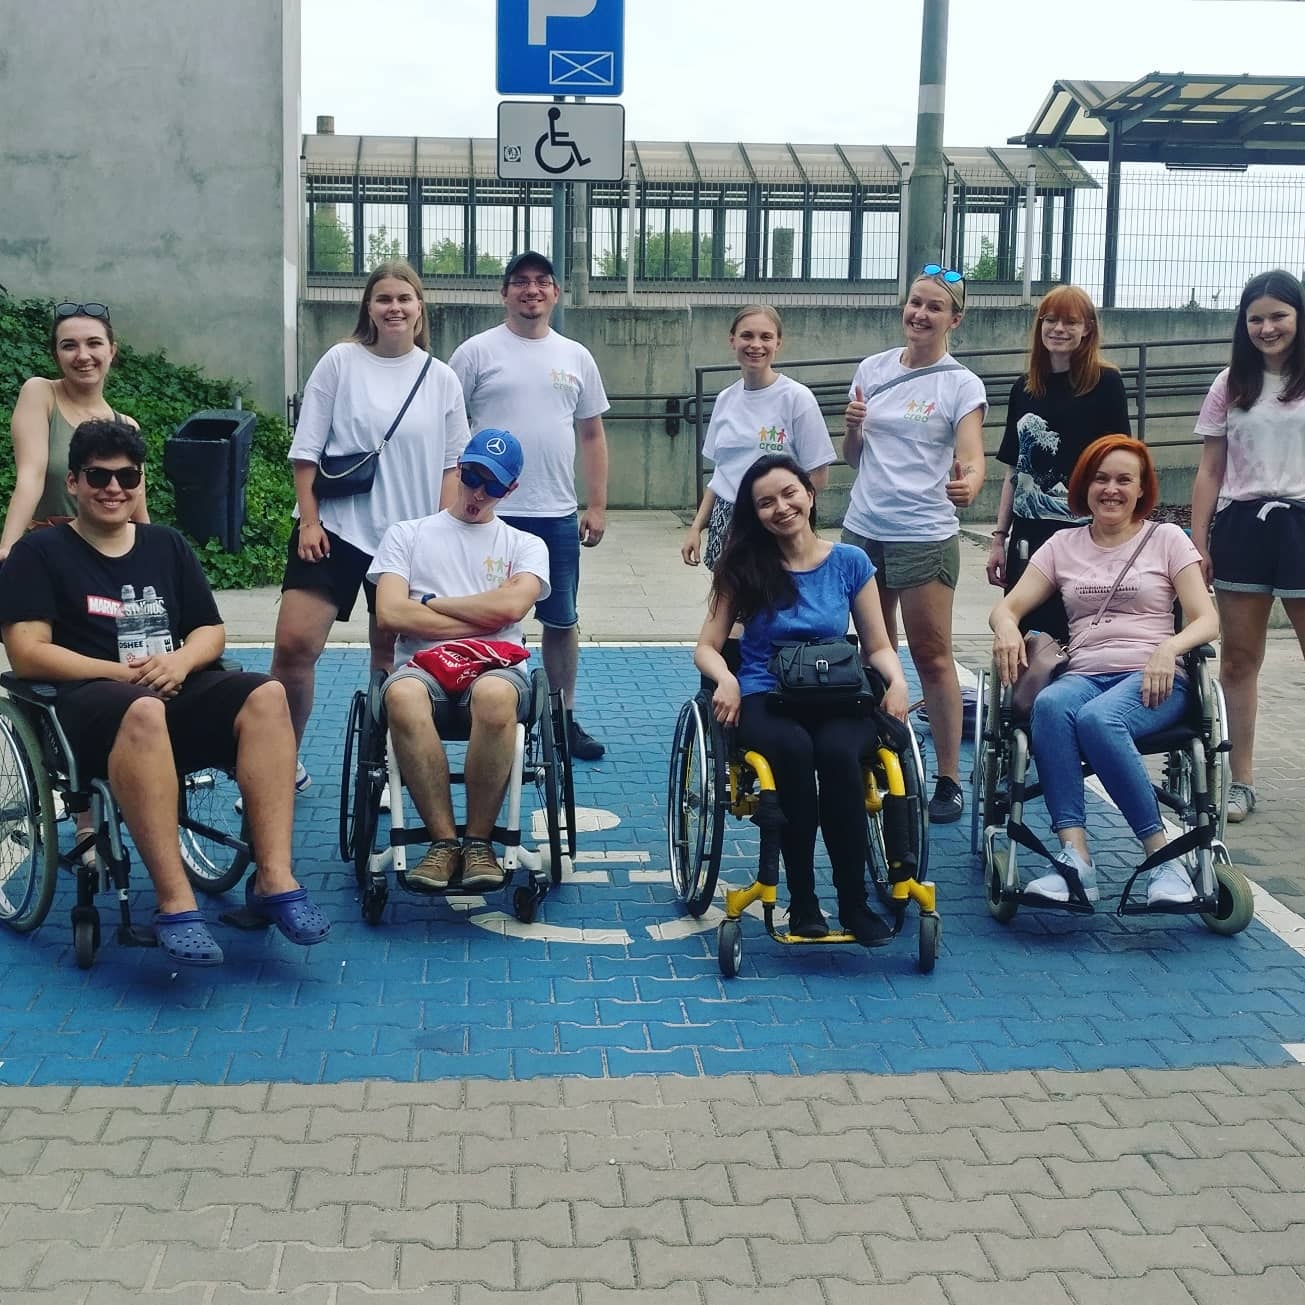 Grupa osób, w tym część na wózkach stoi na miejscu parkingowym dla osoby z niepełnosprawnością. Uśmiechają się.